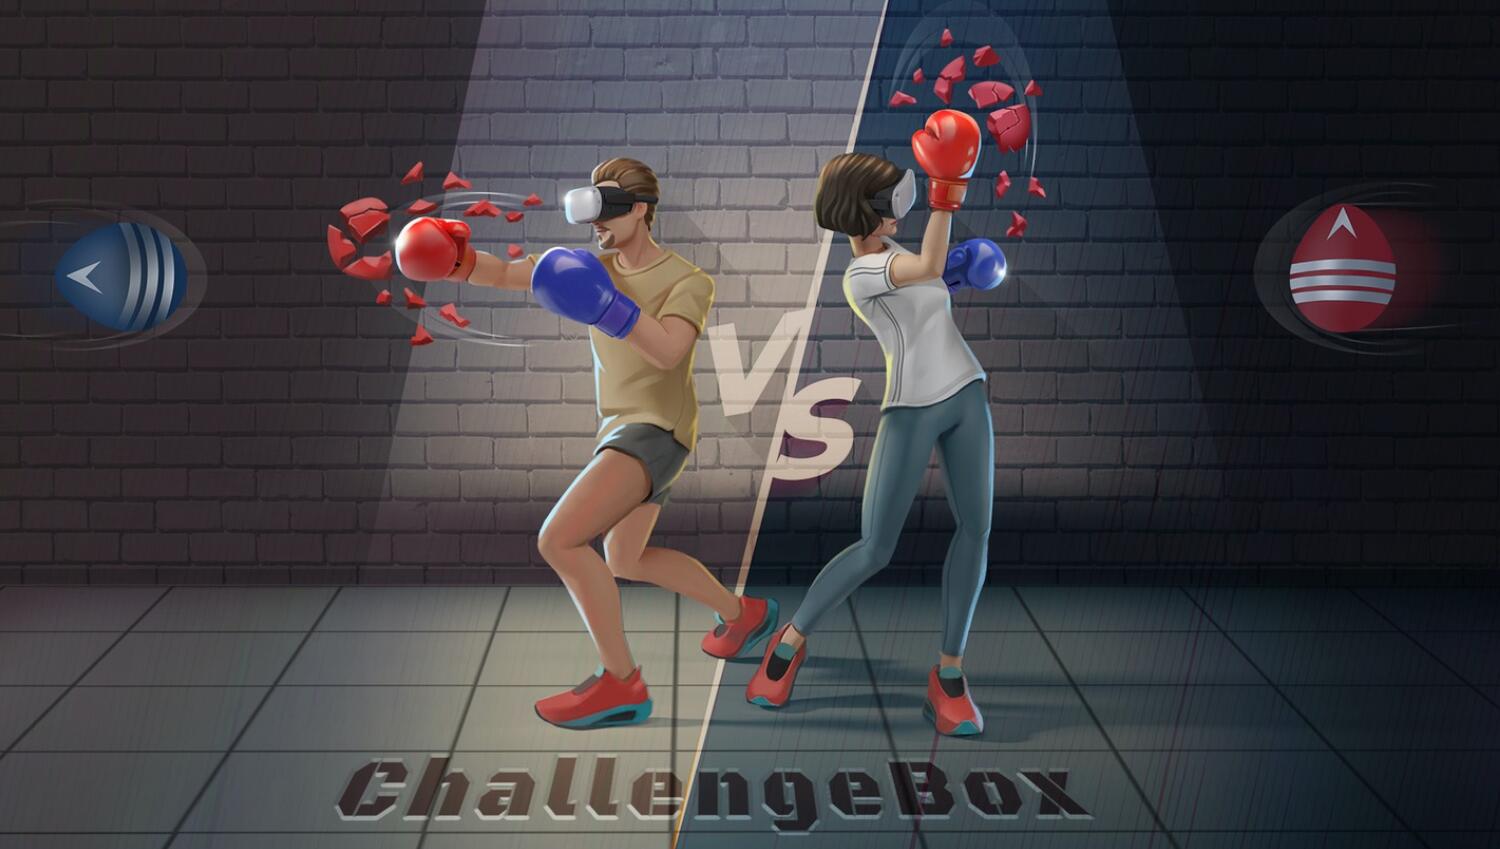 Oculus Quest 游戏《拳击健身挑战》ChallengeBox – Fitness Challenges